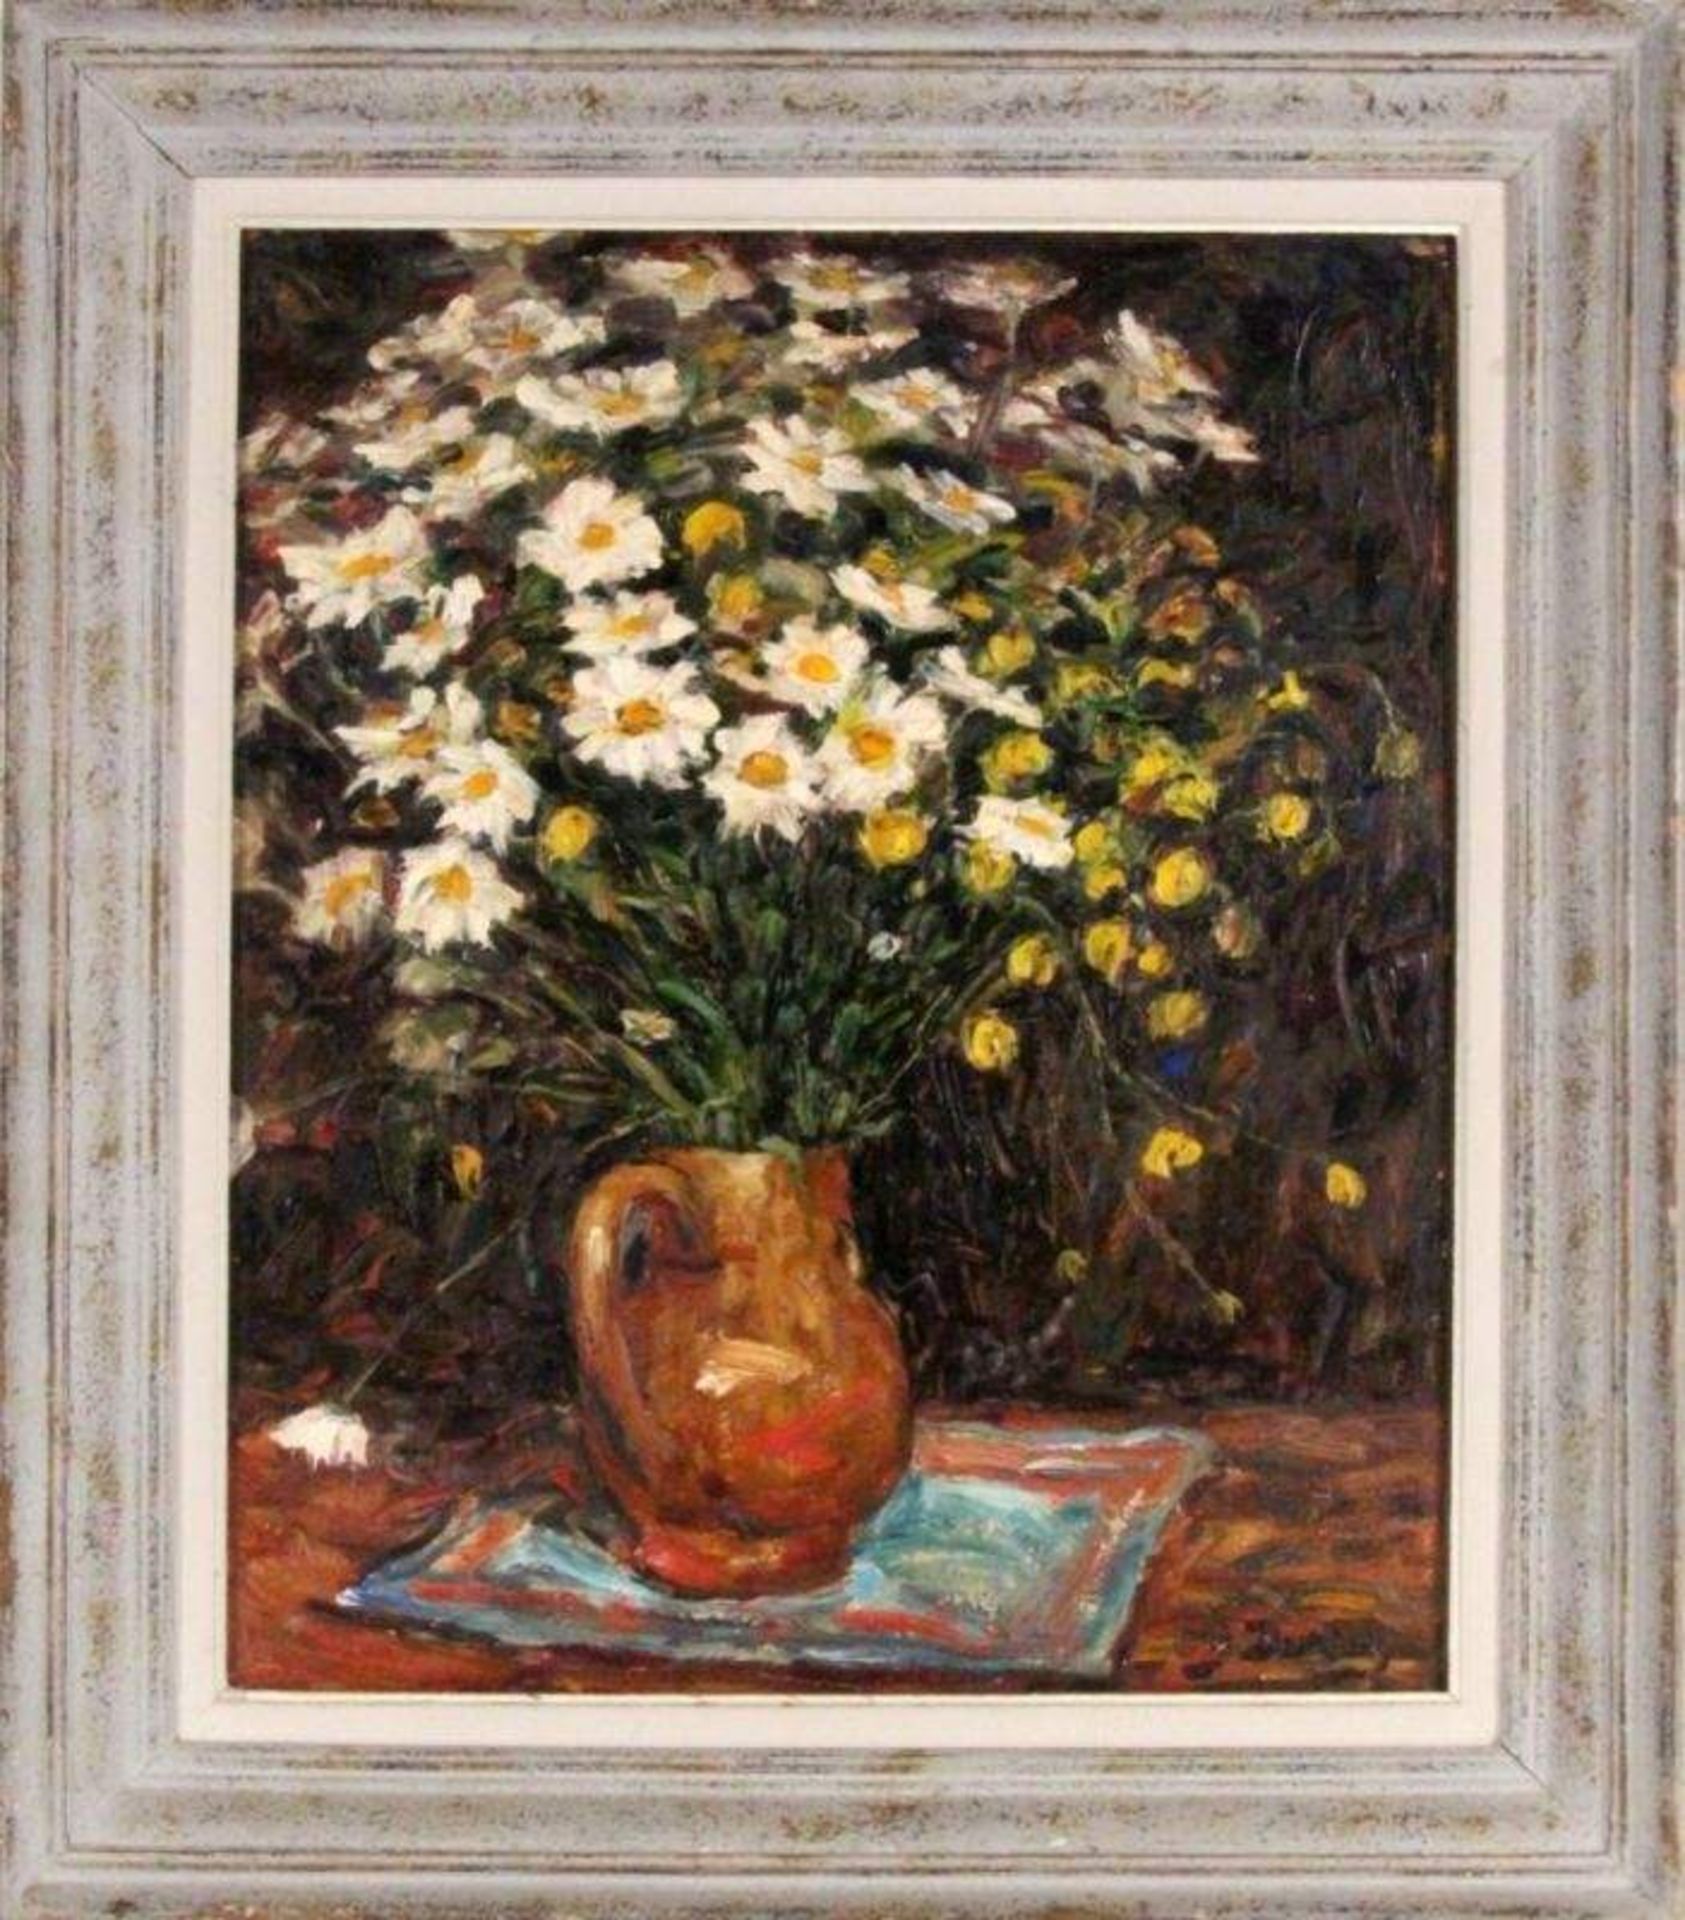 DURIEZ, JULESFrankreich 1900 - 1993 Blumen in der Vase. Öl/Holz, signiert. 65x54cm DURIEZ,